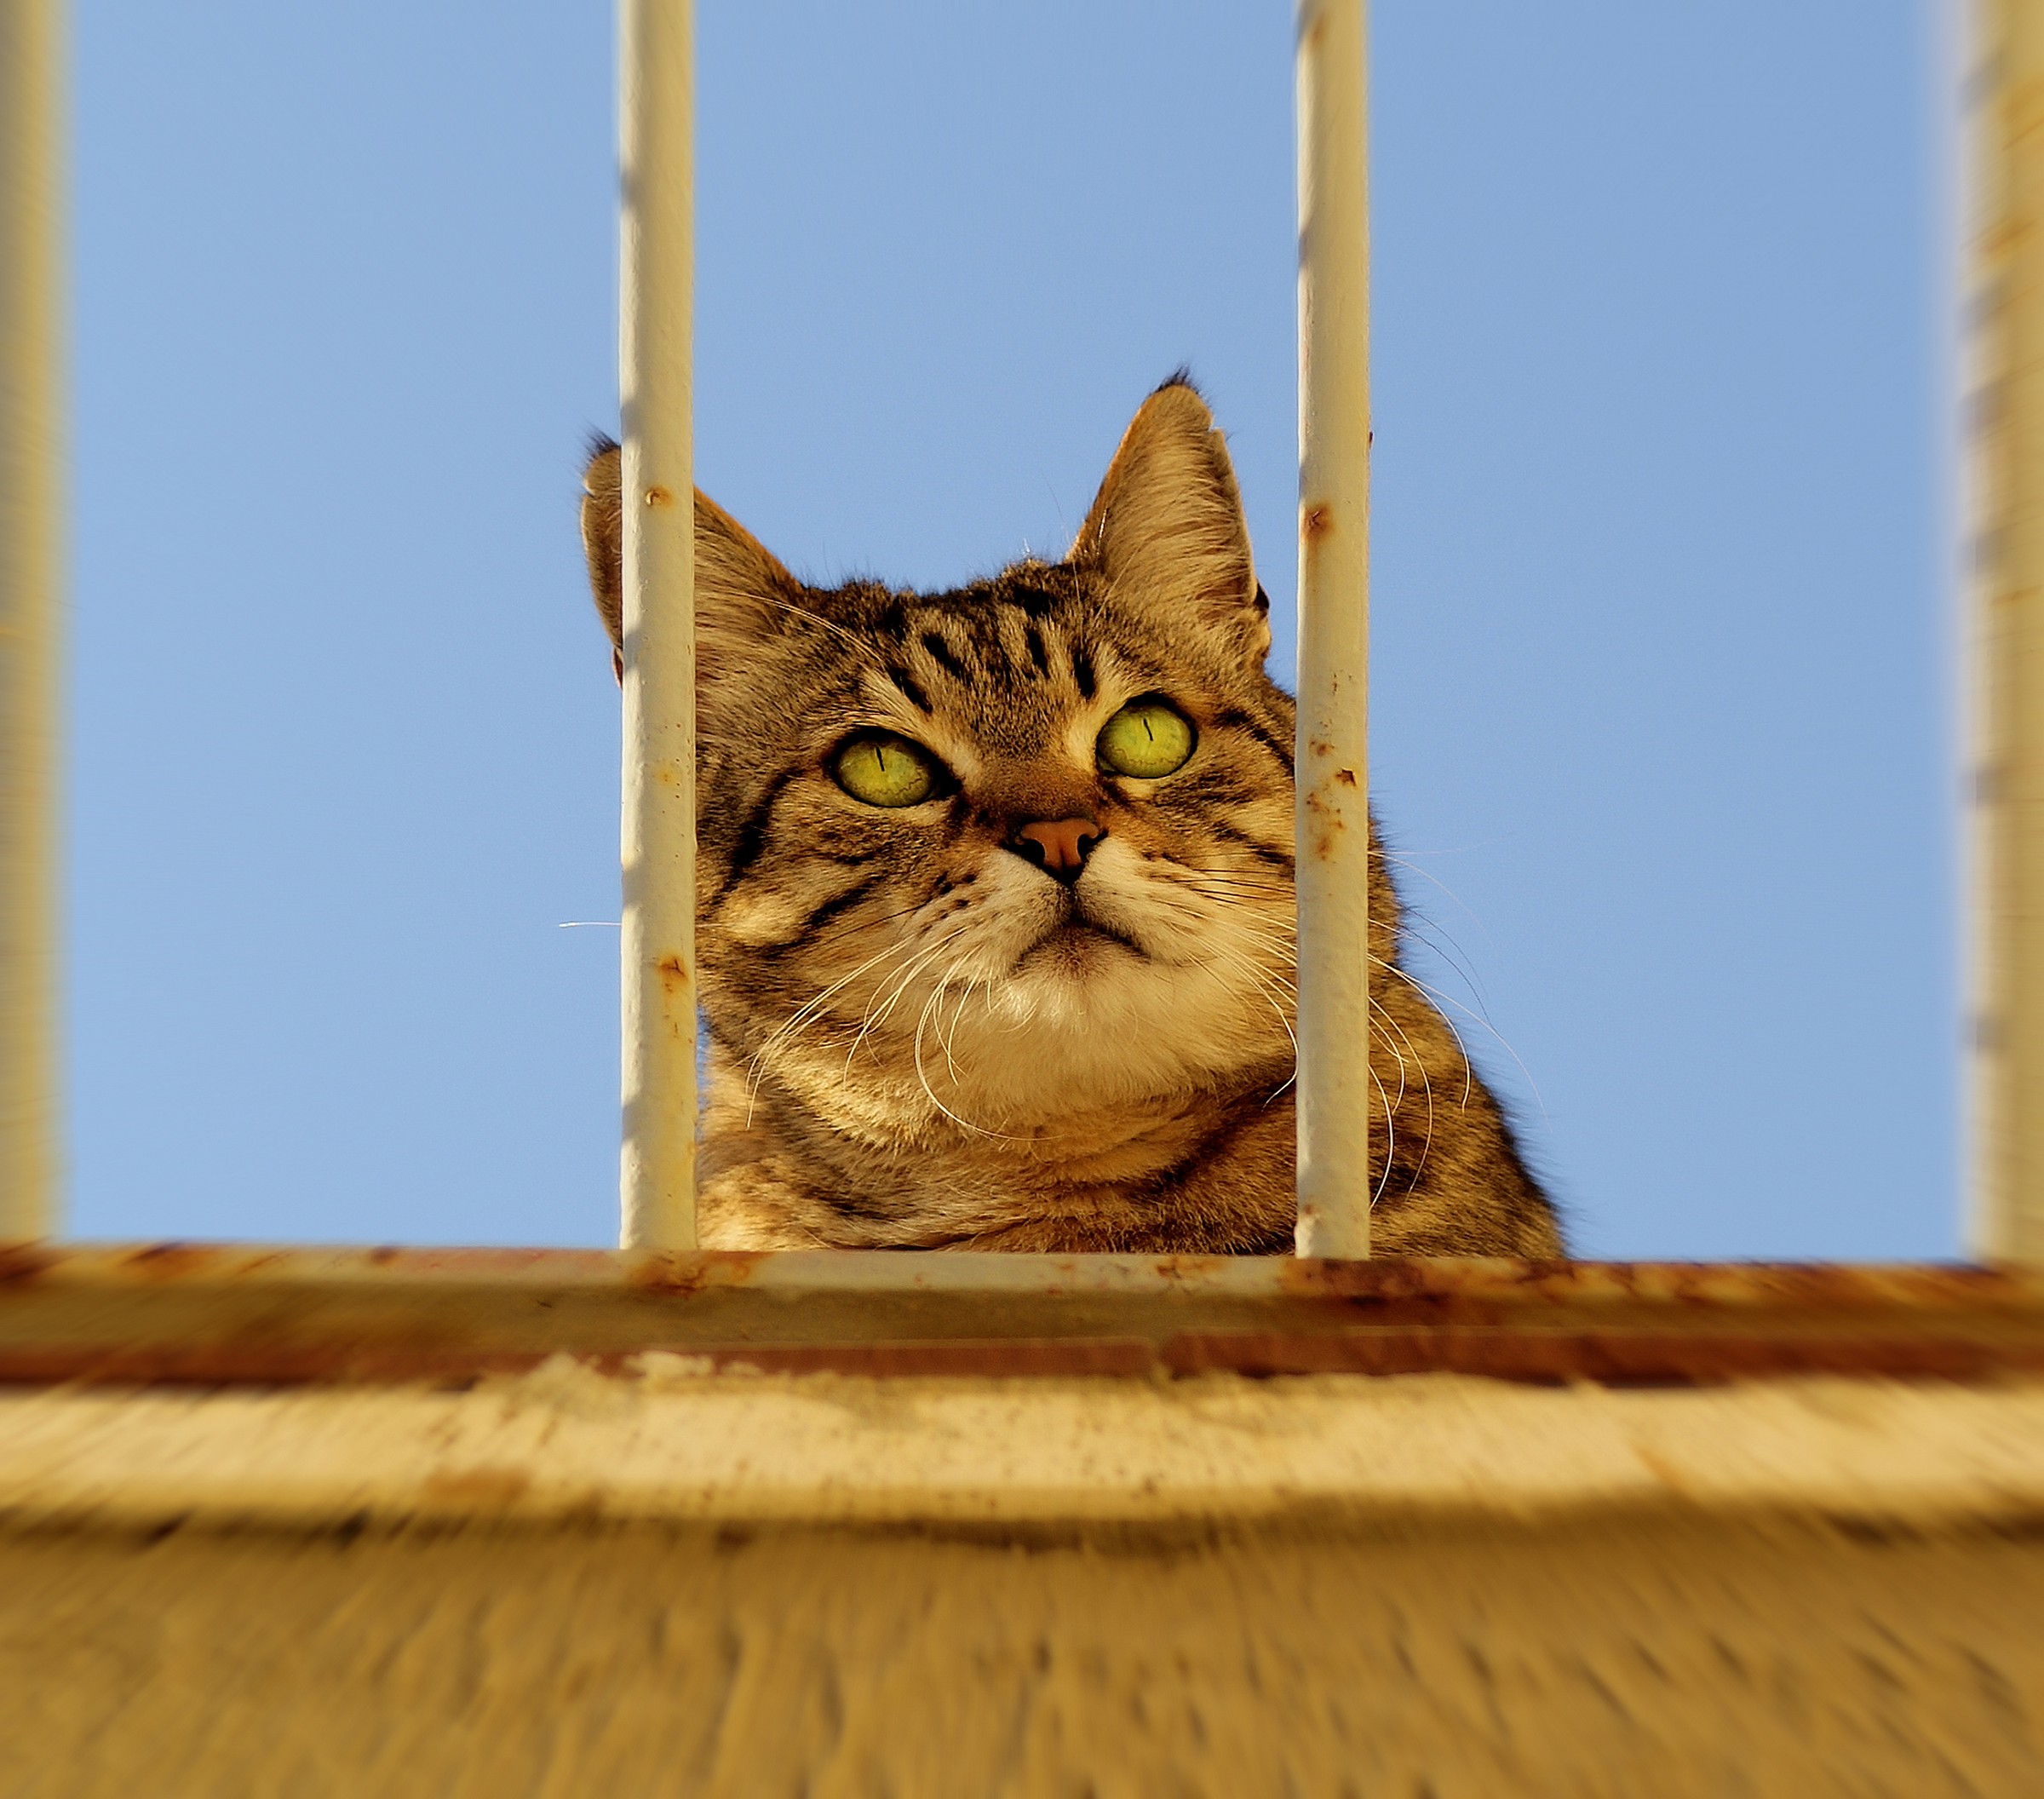 Behind bars!...